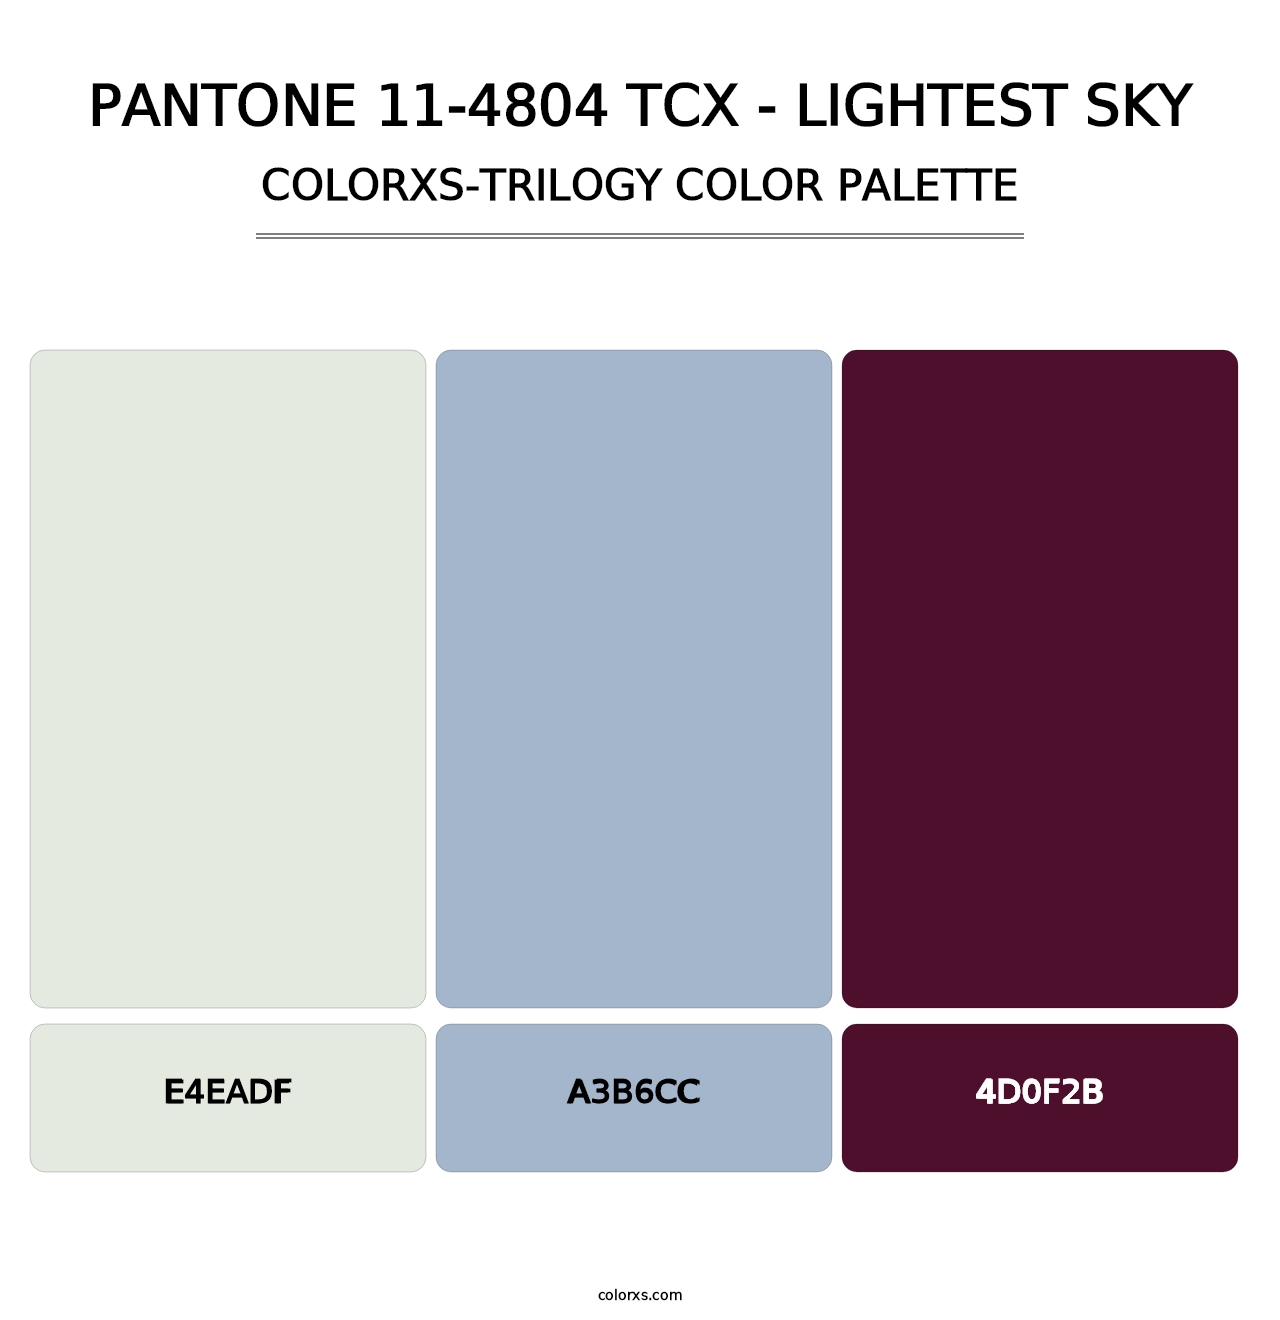 PANTONE 11-4804 TCX - Lightest Sky - Colorxs Trilogy Palette